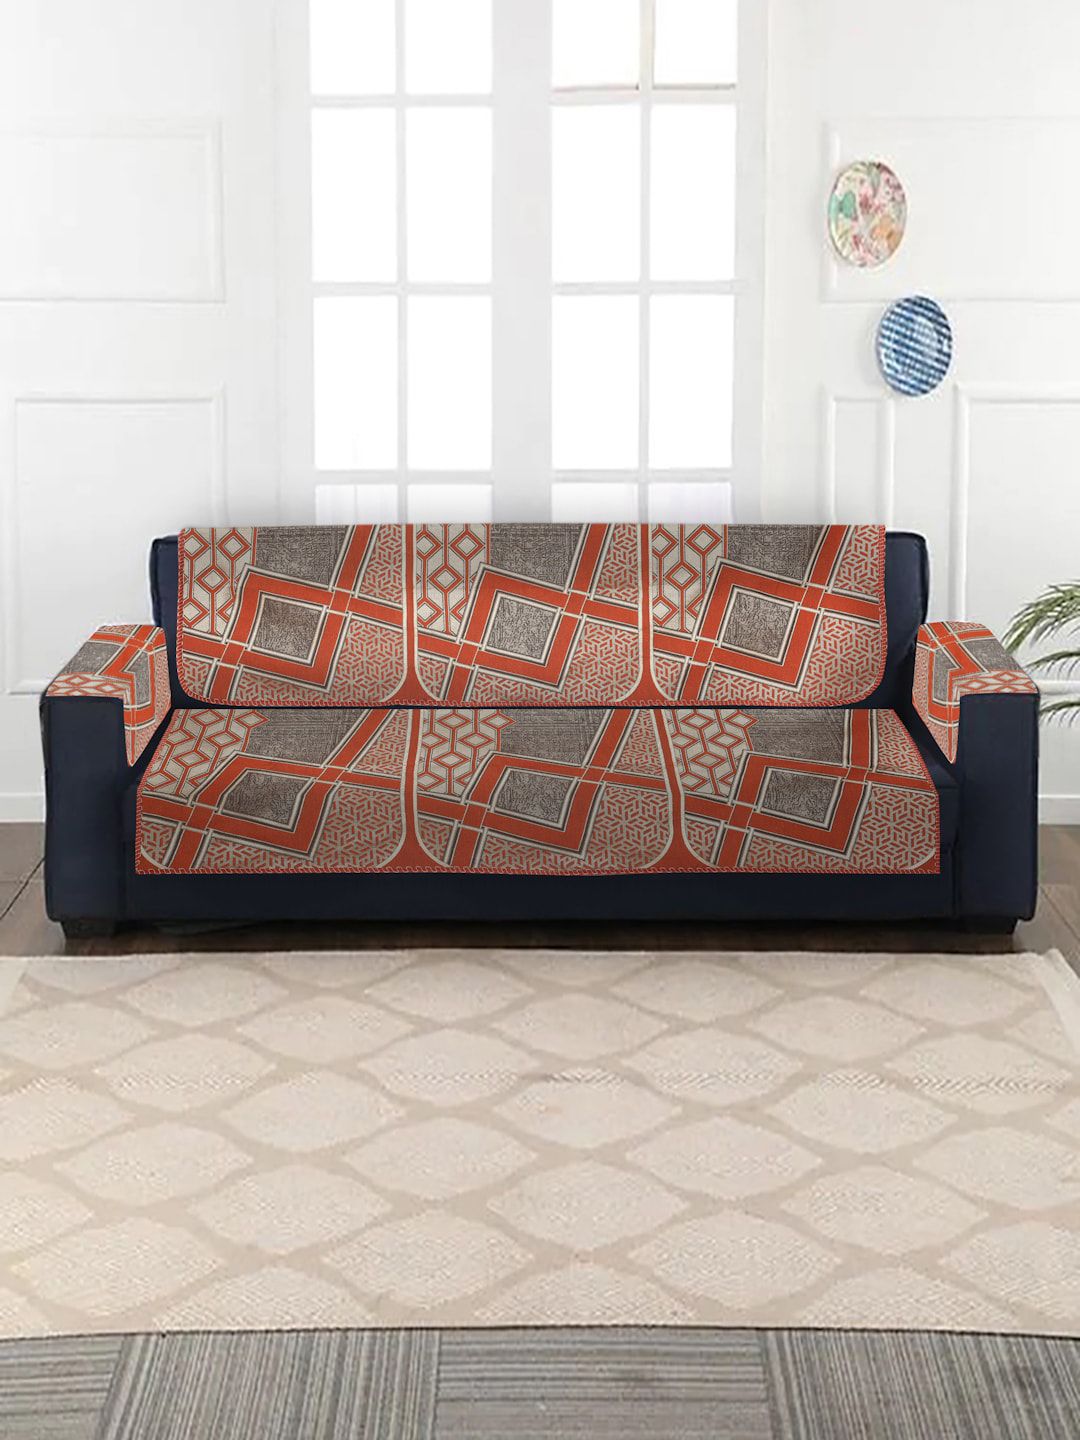 MULTITEX Unisex Rust Sofa Covers Price in India